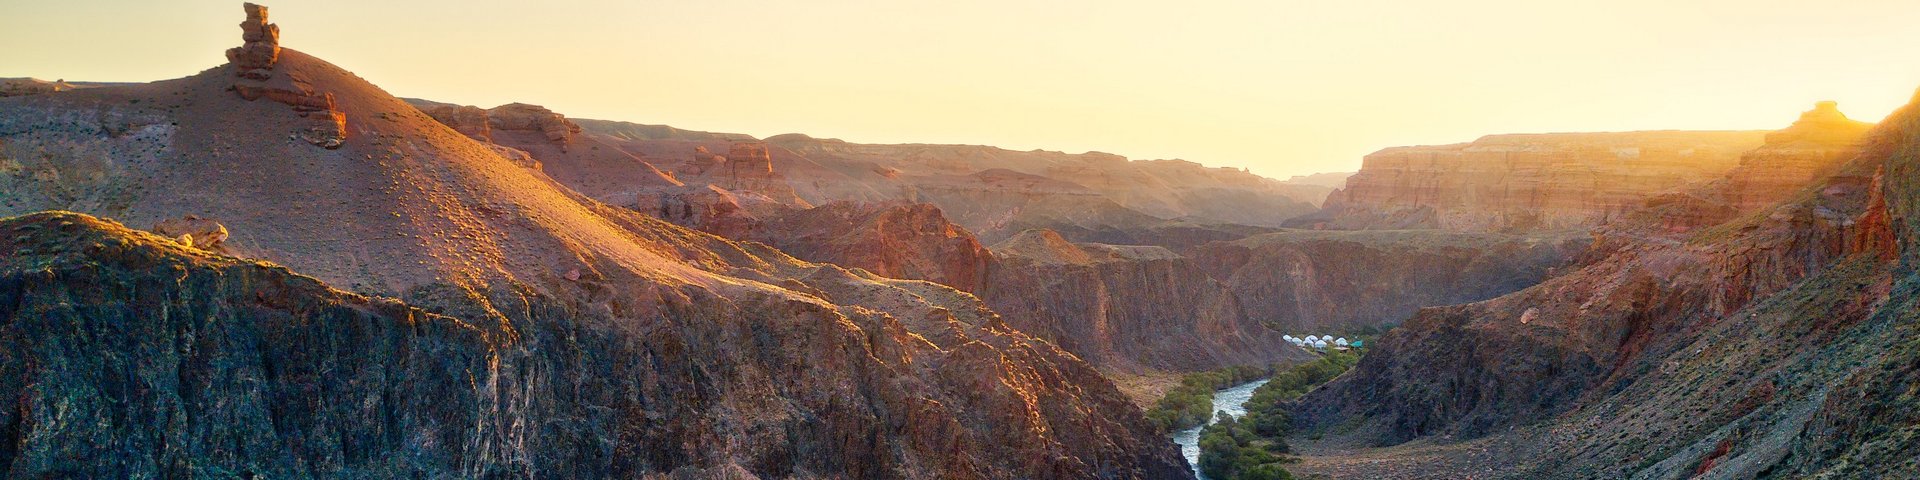 Blick auf den Charyn-Canyon mit einem Fluss